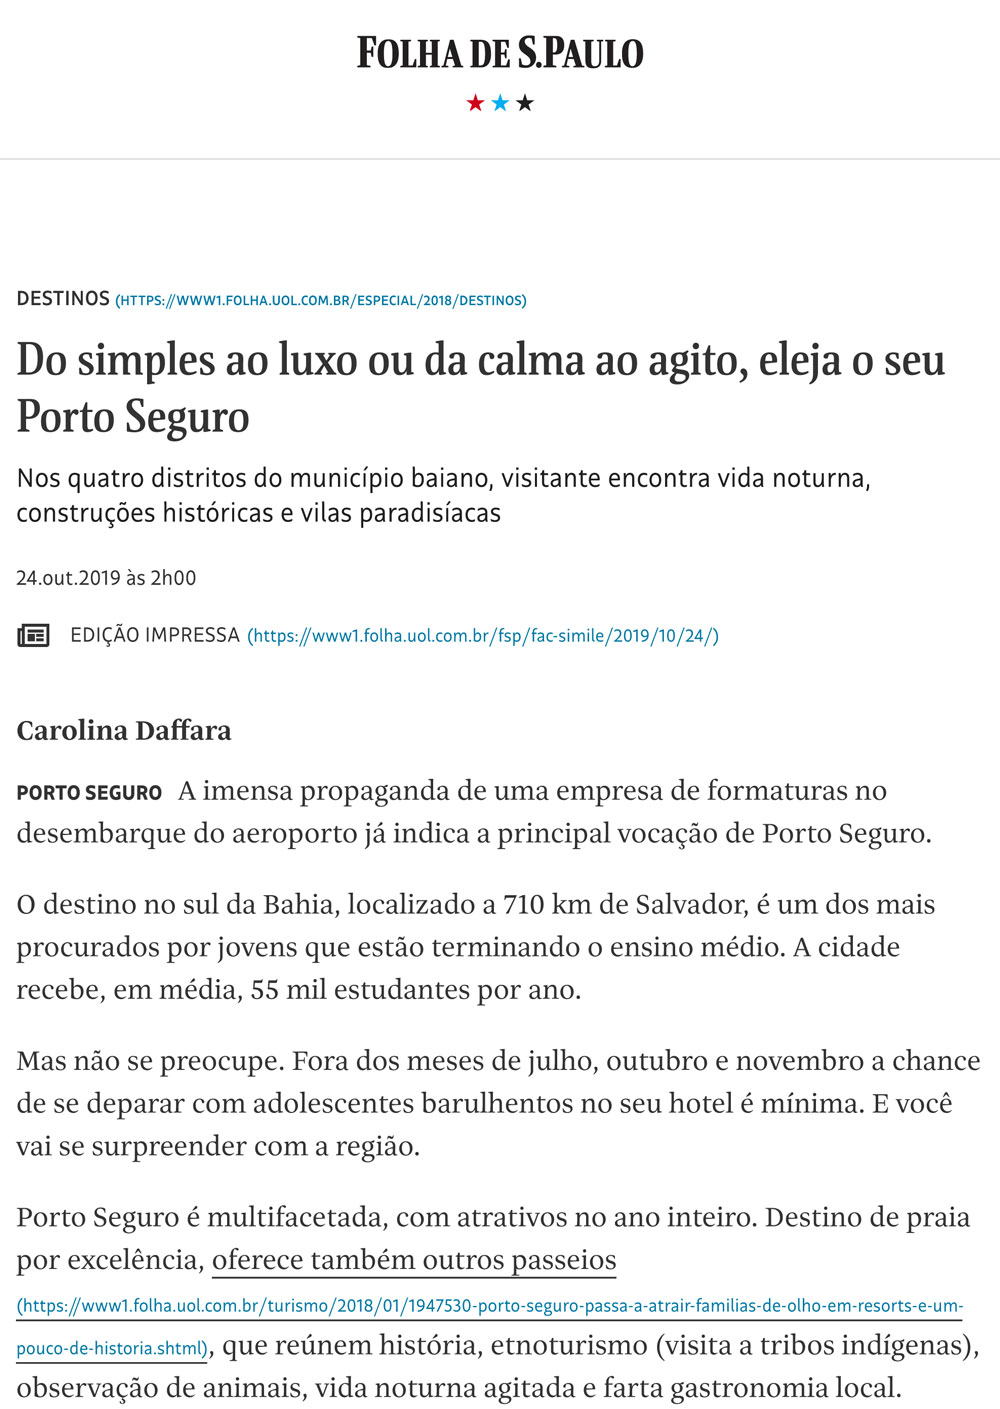 Folha de São Paulo - 24/10/2019